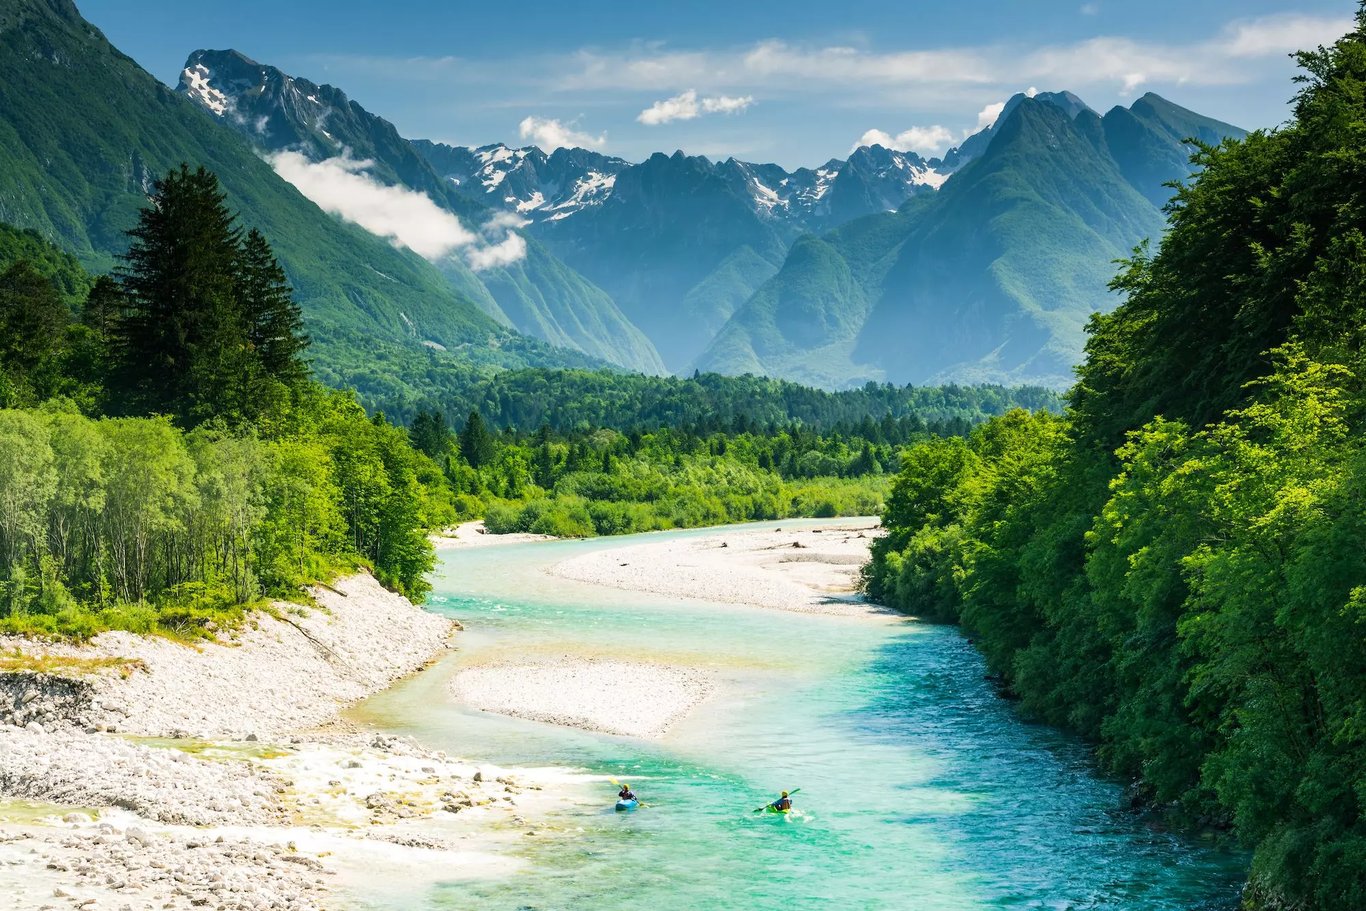 Soca River, Slovenia - Europe's No 1 River